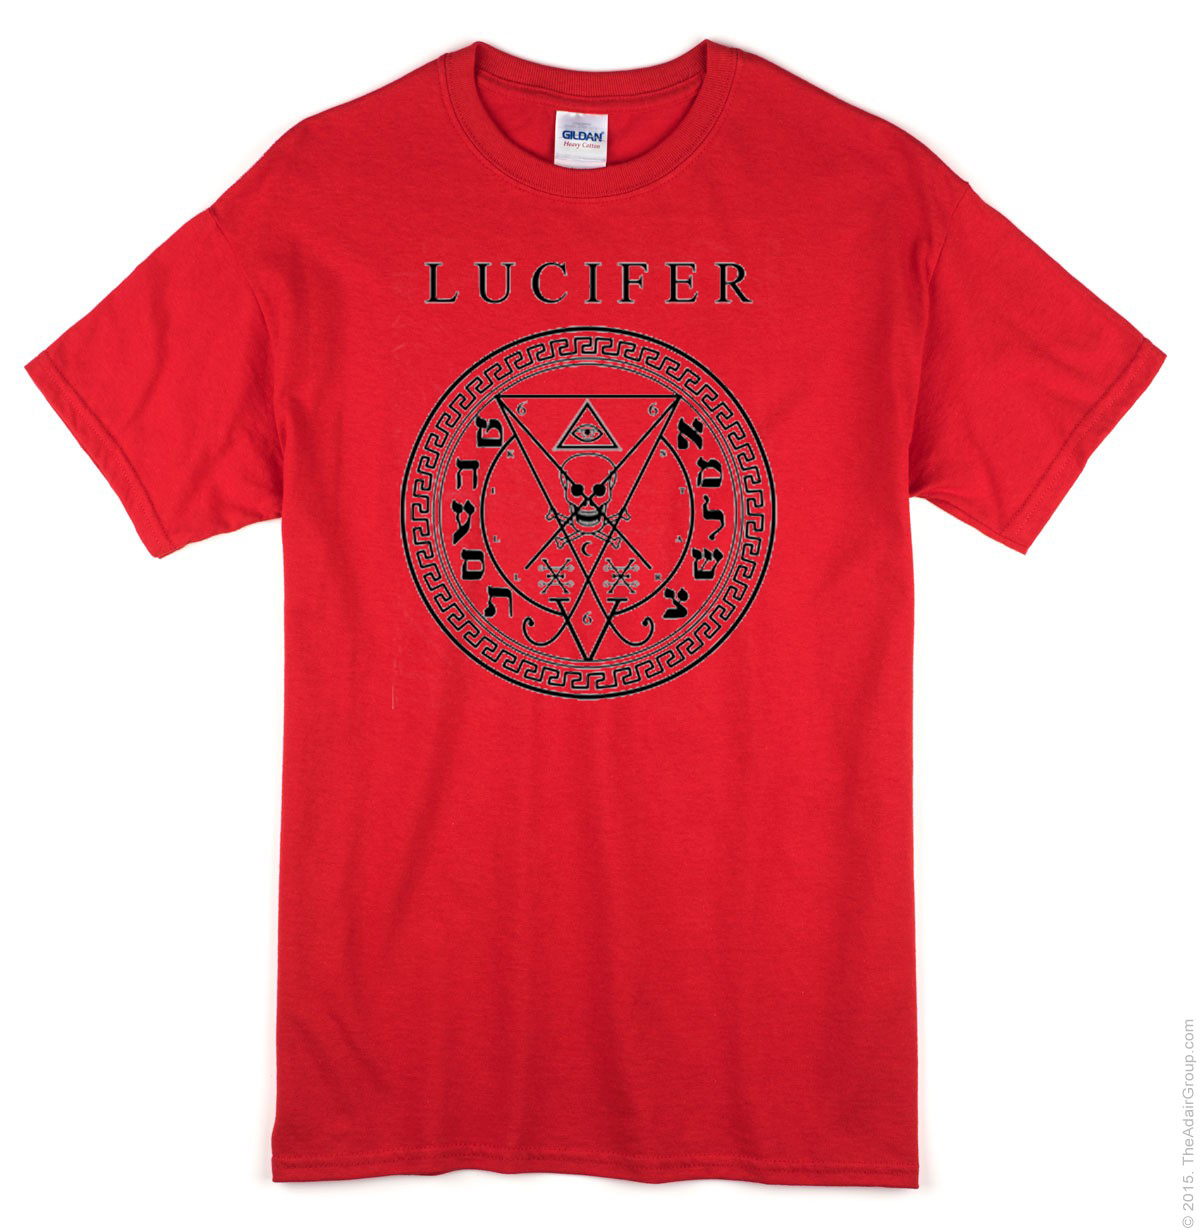 lucifer red shirt